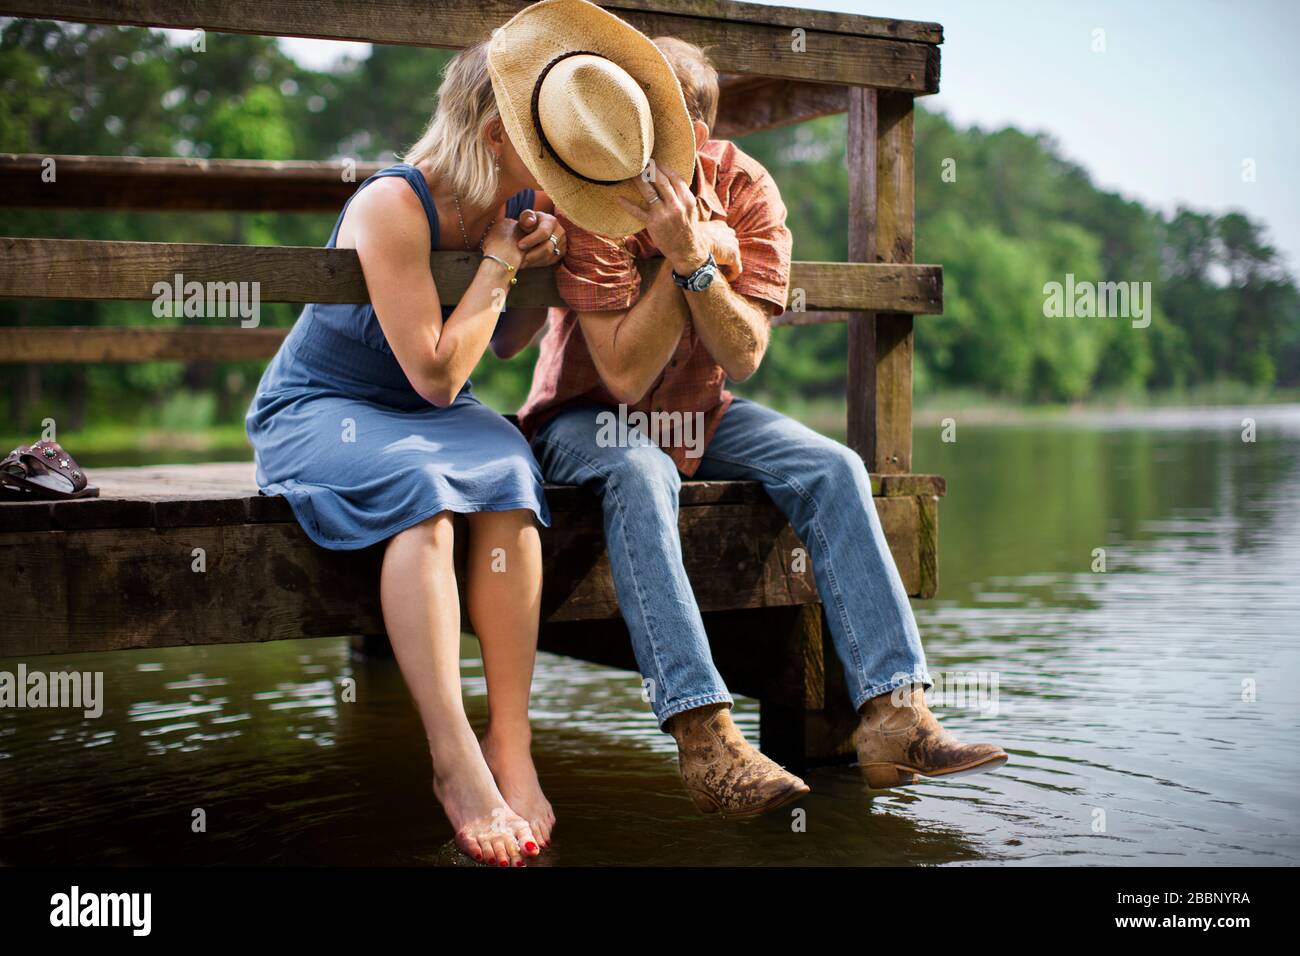 L'homme mûr tient un chapeau de cowboy pour bloquer la vue pendant qu'il  penche pour donner à sa femme un baiser romantique lorsqu'ils s'assoient  ensemble sur une jetée en bois au-dessus d'un